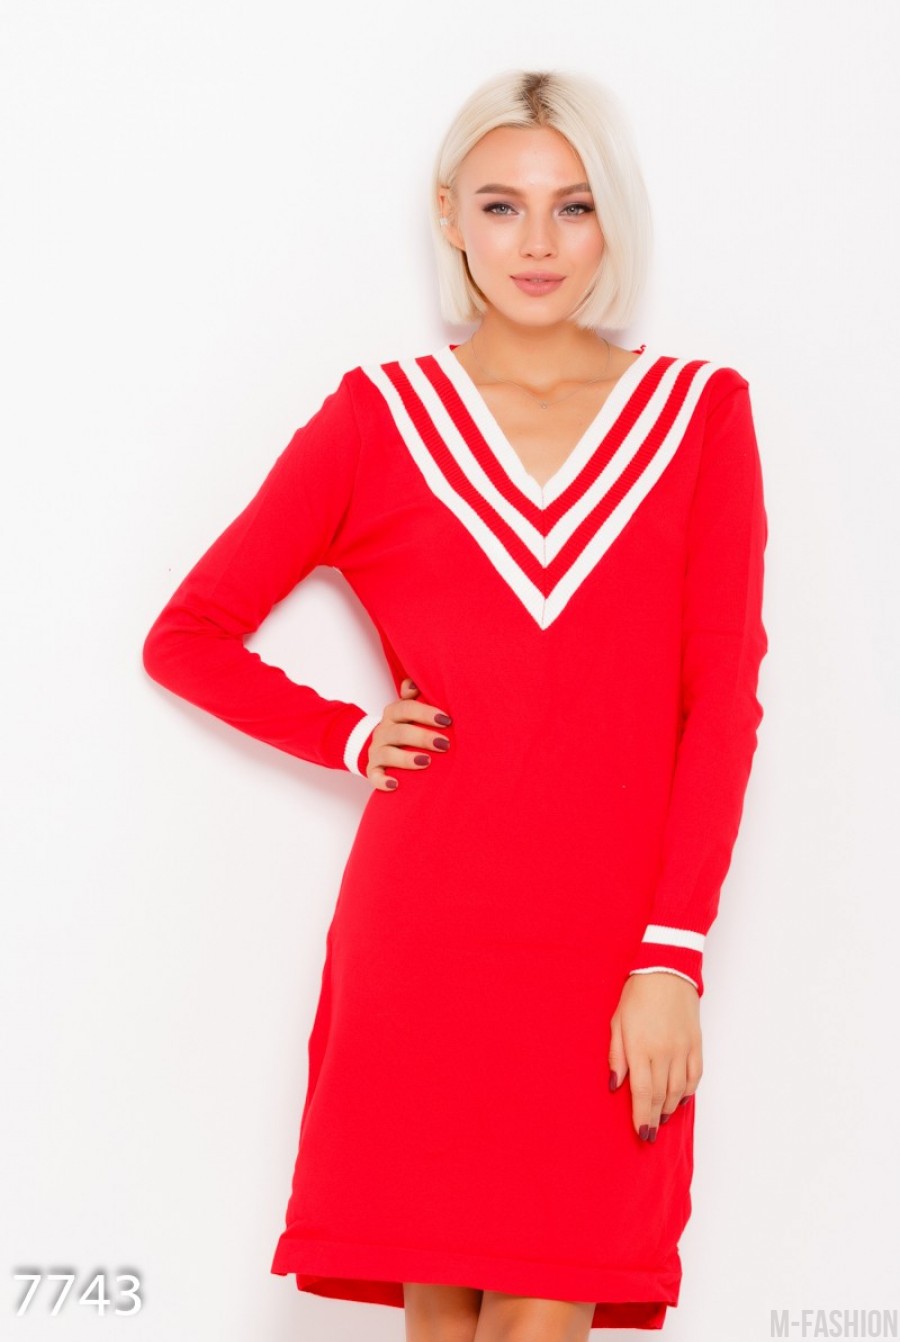 Трикотажное красное платье французской длины с вырезом кармен